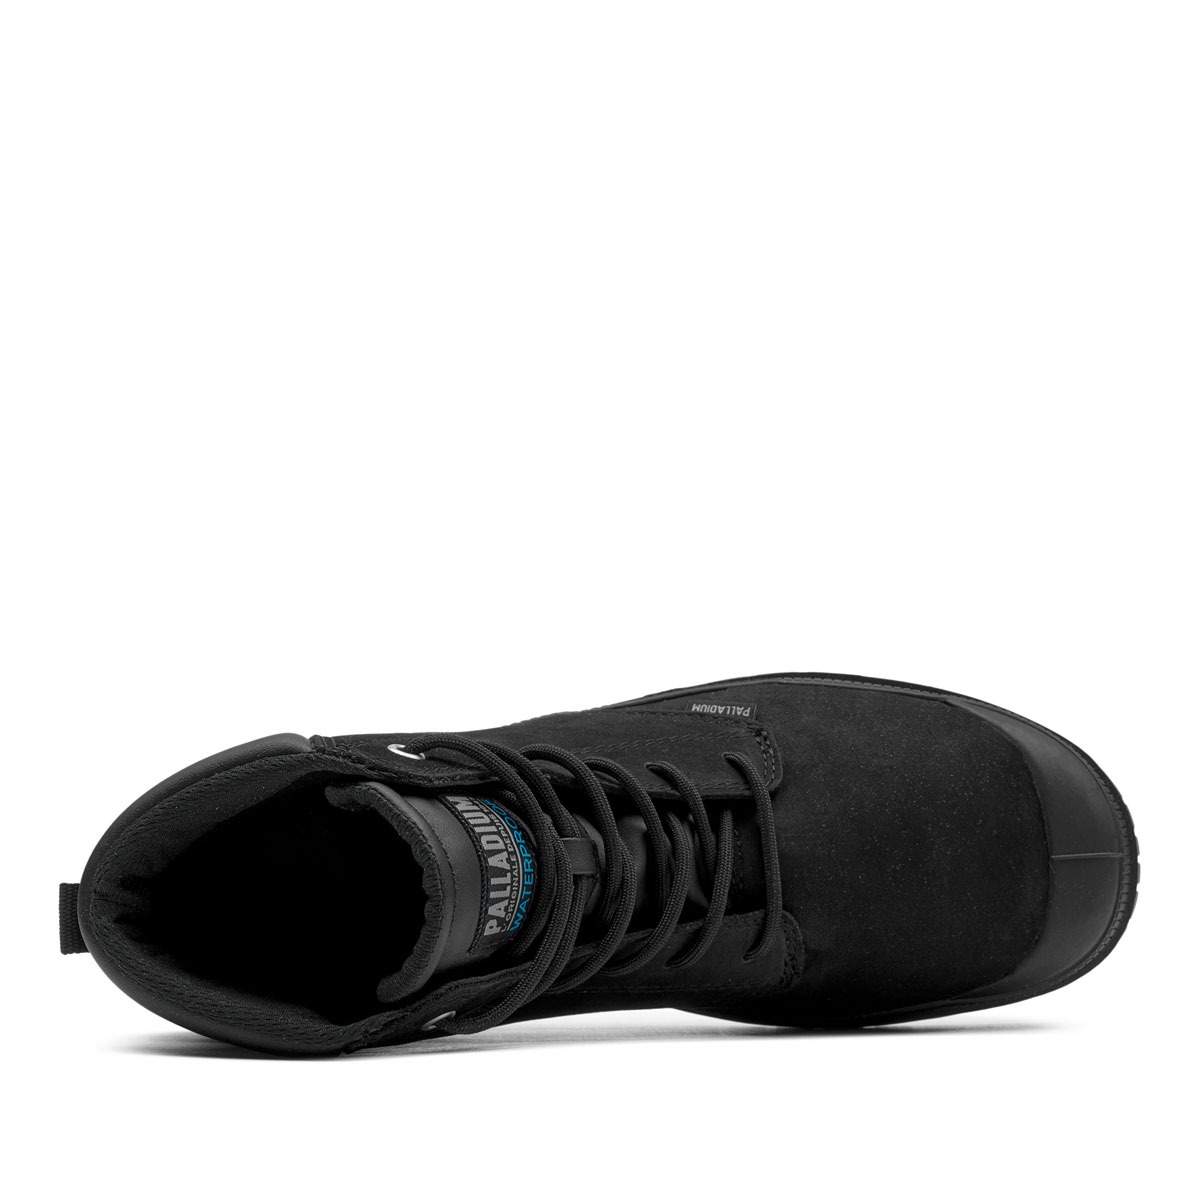 Palladium SP20 Cuff Leather WaterProof Мъжки спортни обувки 77891-008-M